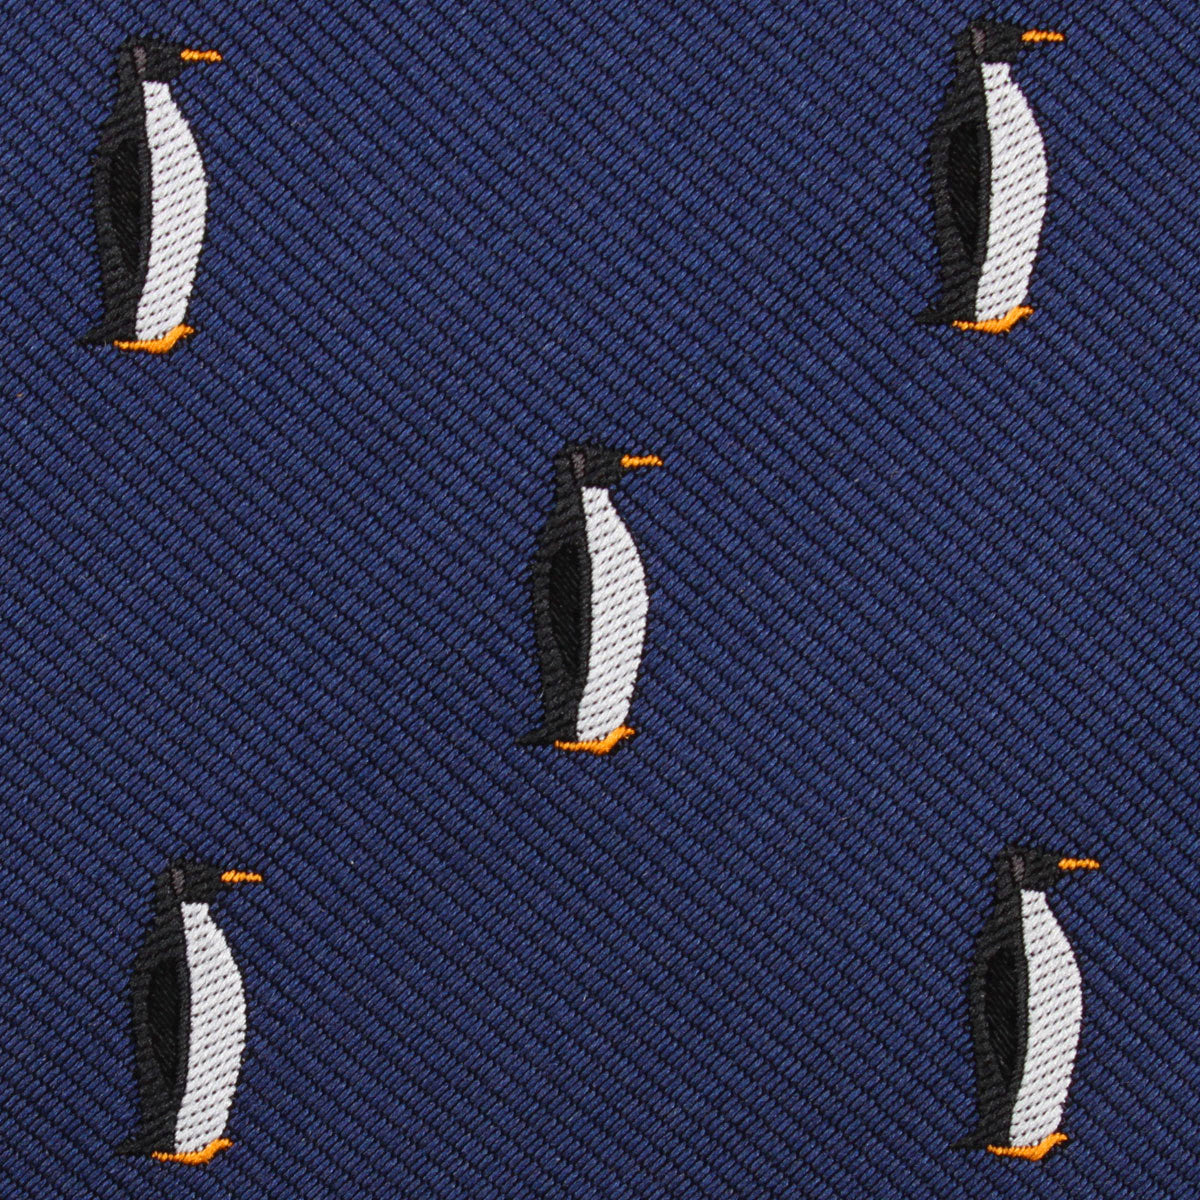 King Penguin Fabric Pocket Square